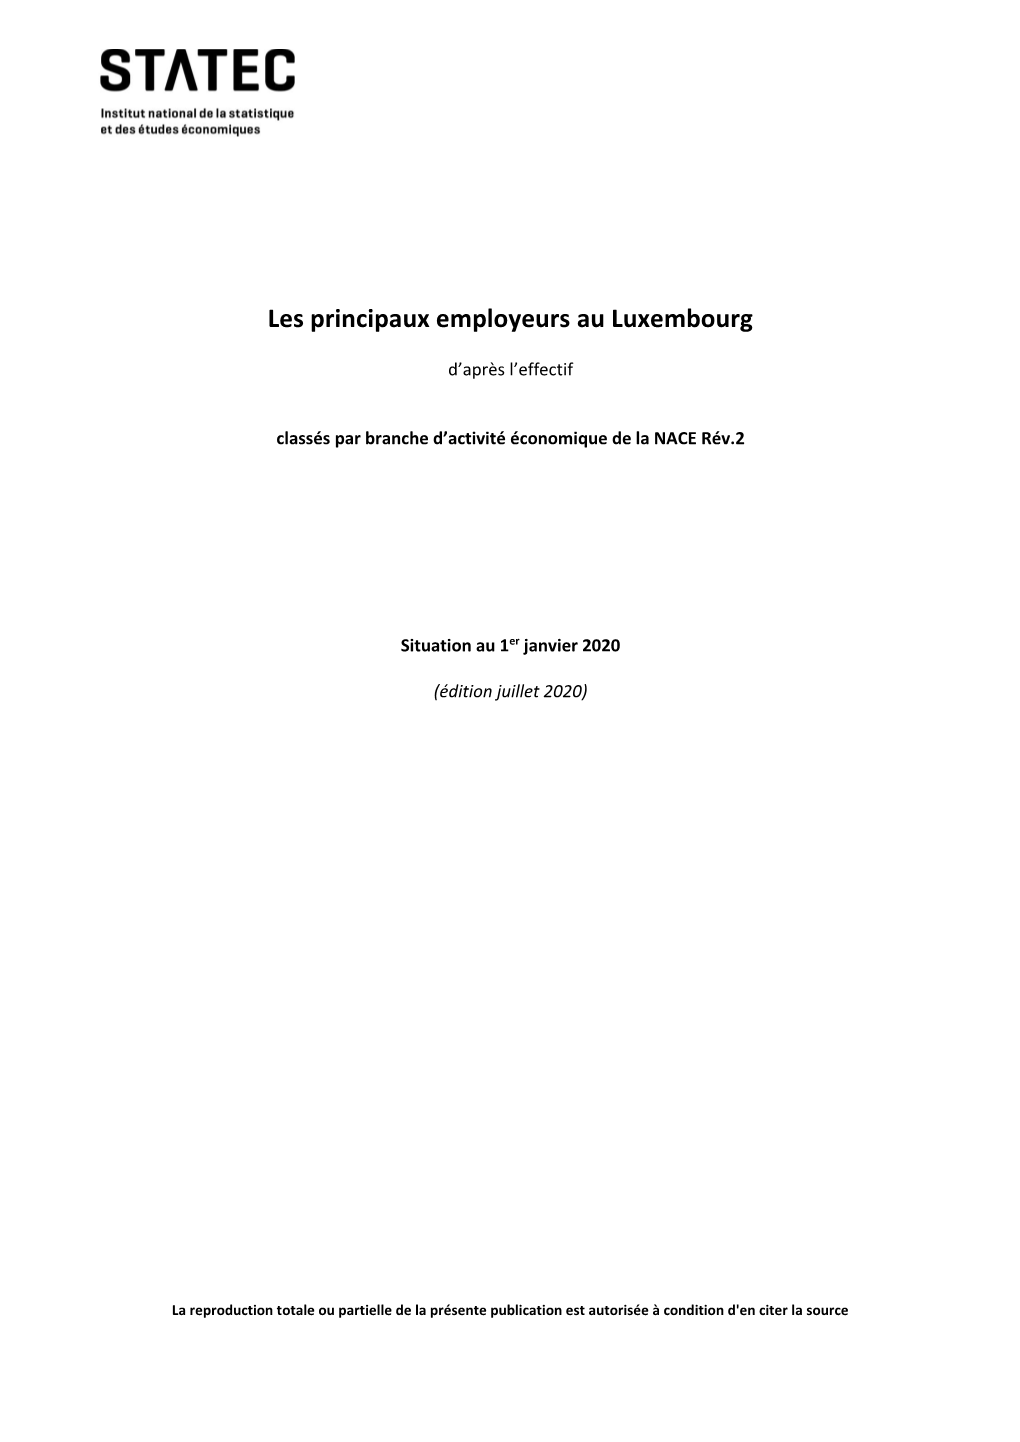 Liste Des Principaux Employeurs Au Luxembourg Au 1 Janvier 2020